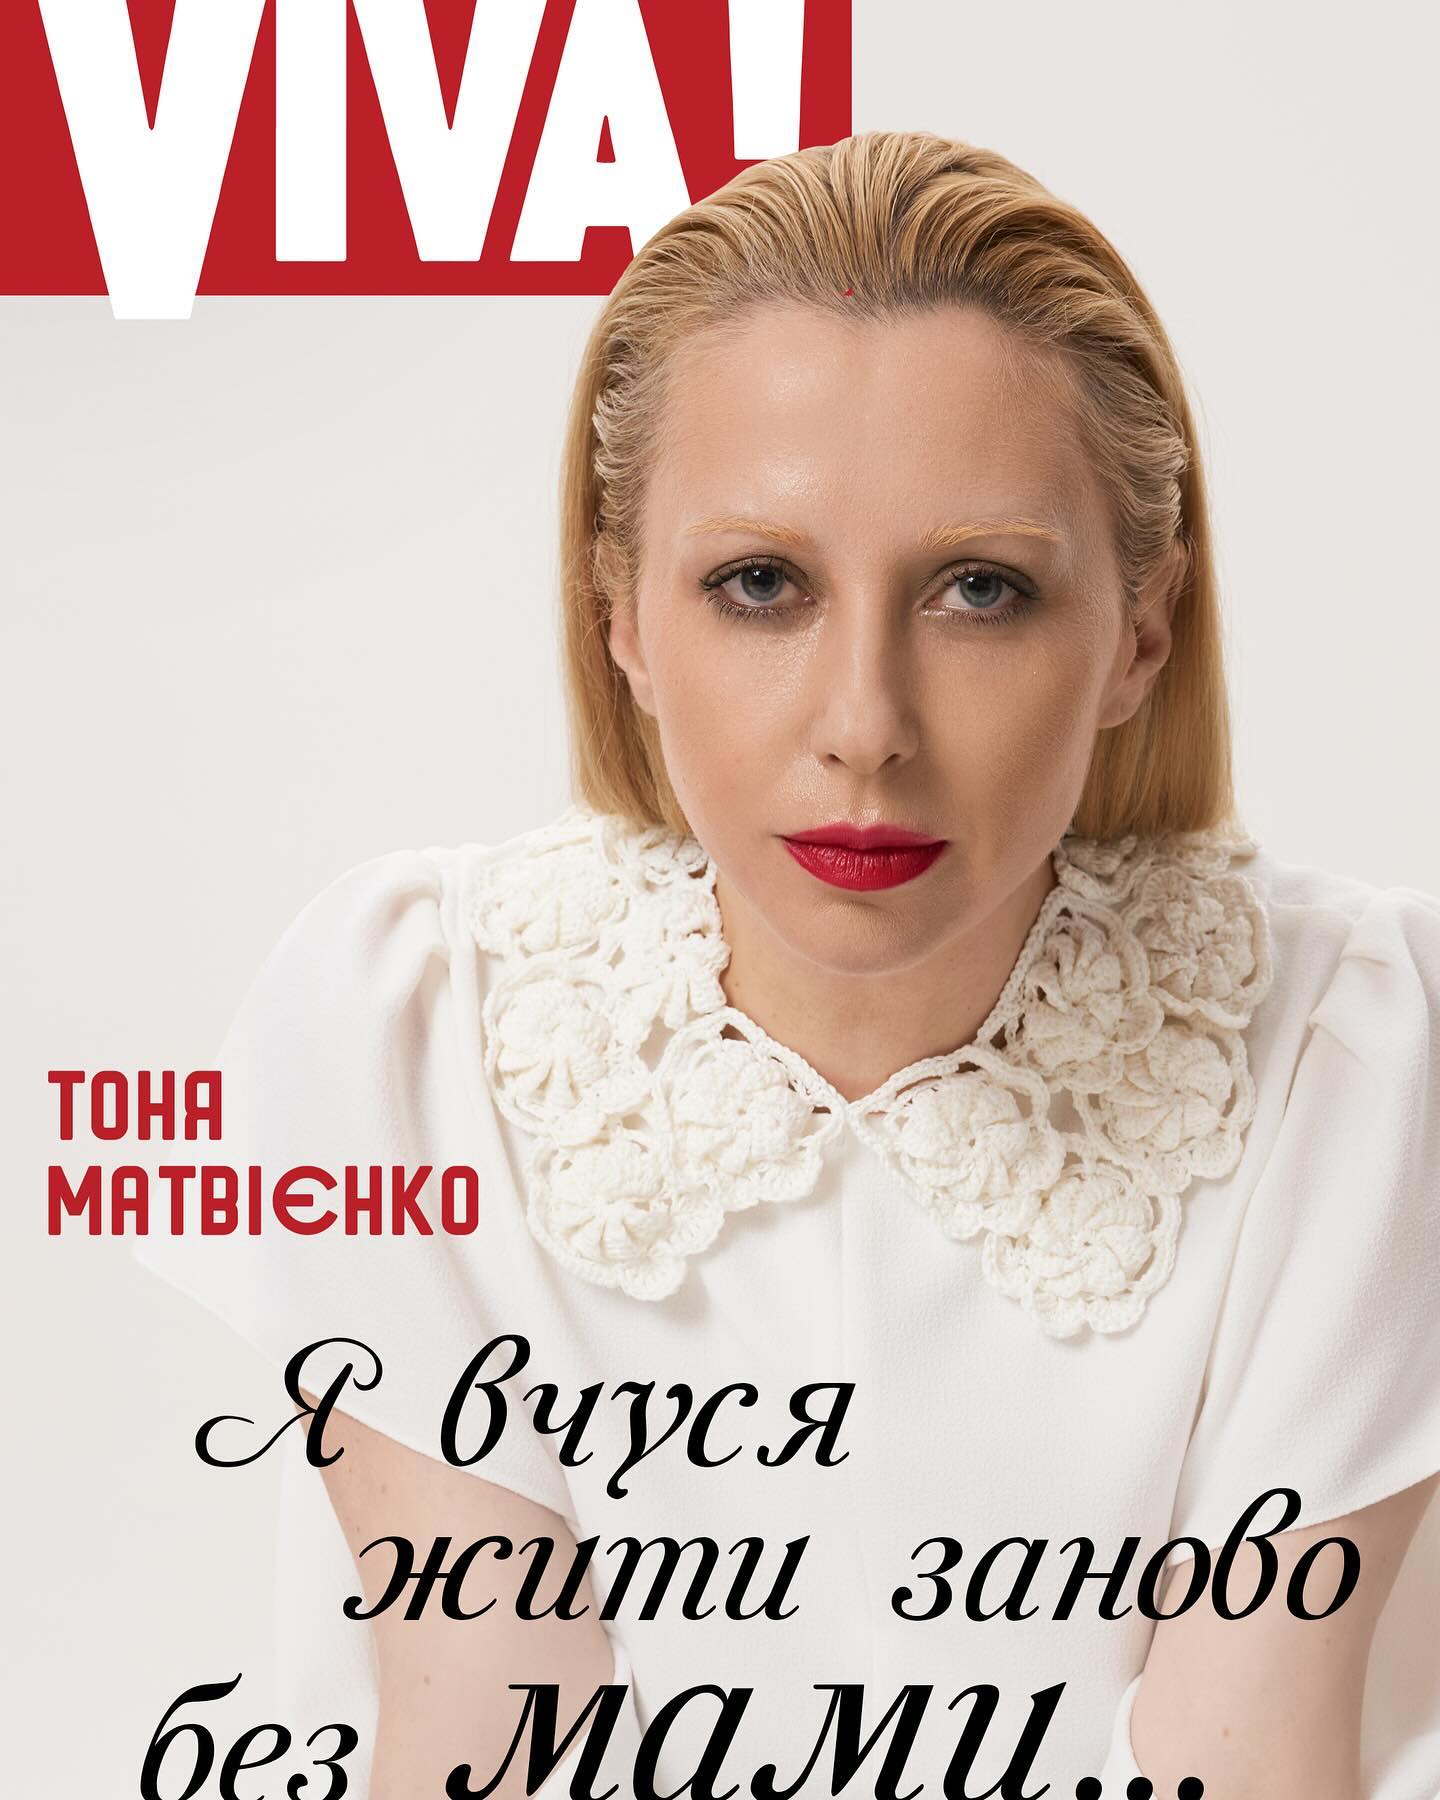 Втратила 10 кілограмів та половину волосся: Тоня Матвієнко розповіла як переживає смерть матері